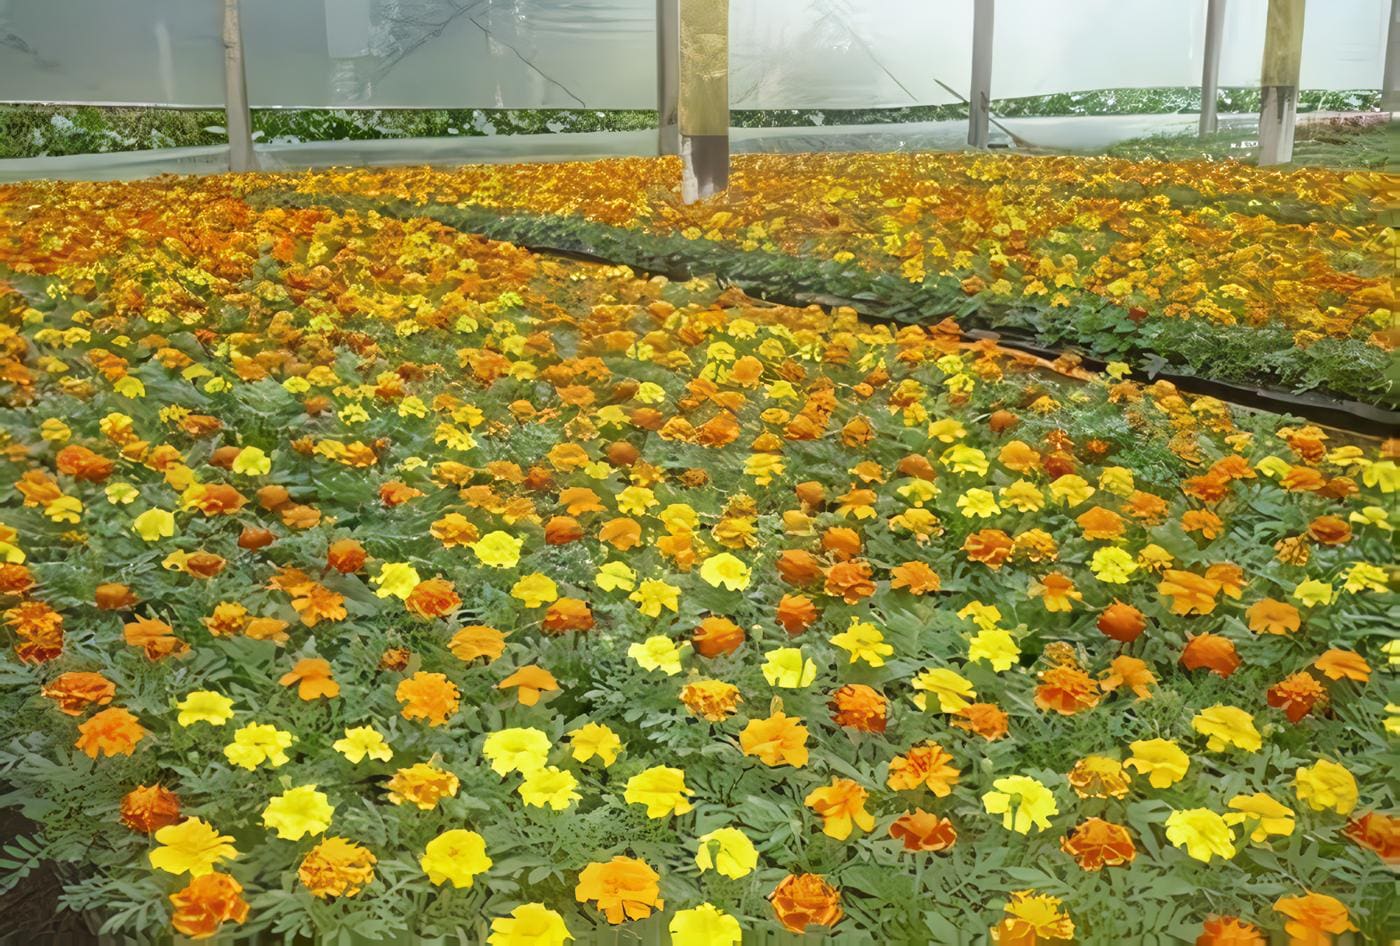 Floricultura-flores